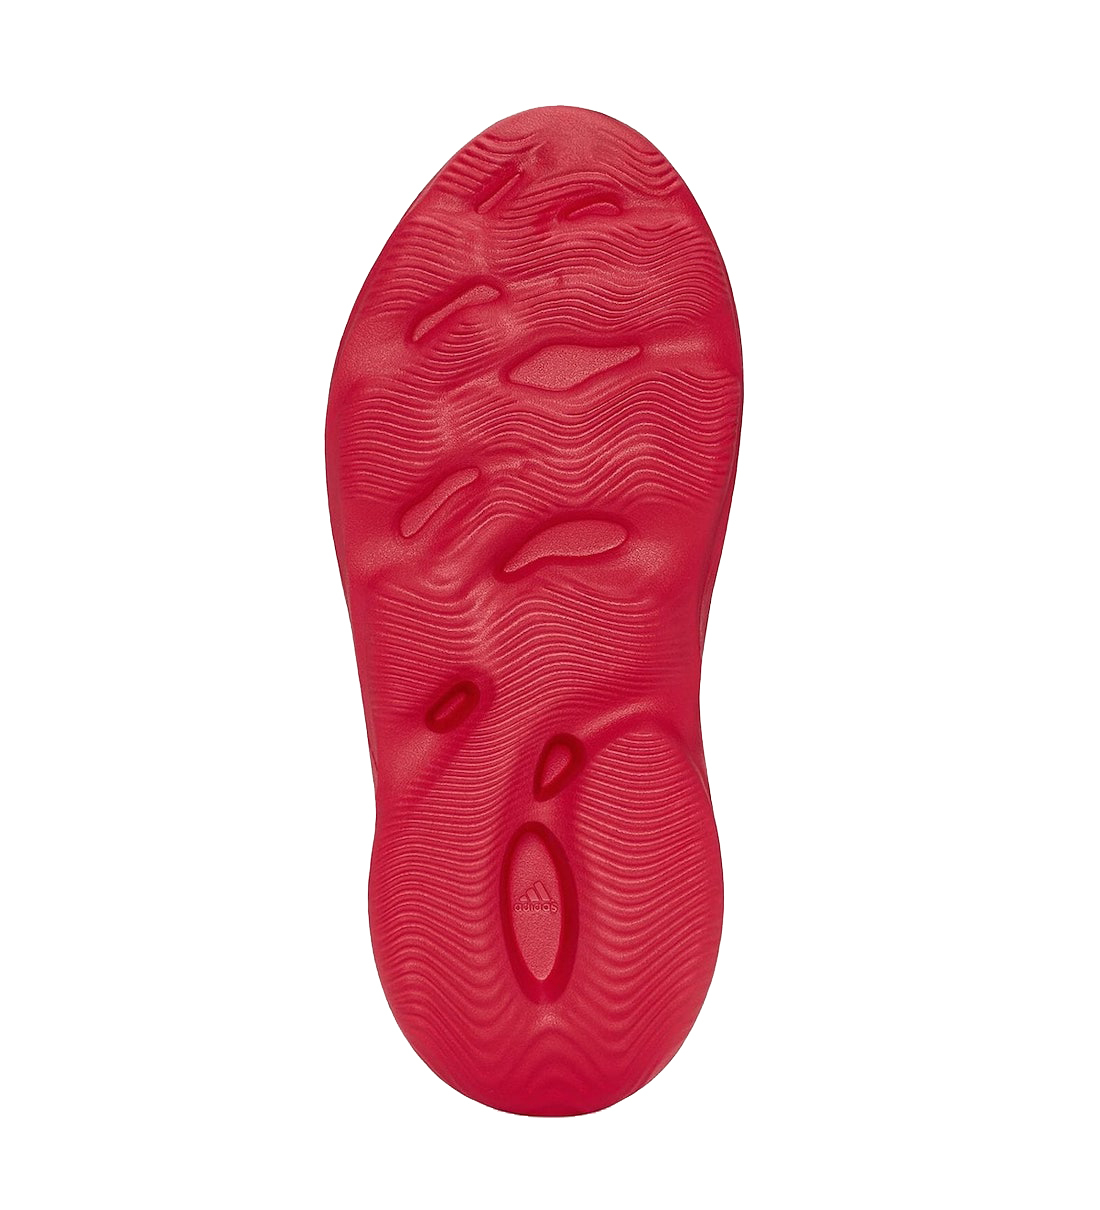 adidas Yeezy Foam Runner Vermilion GW3355